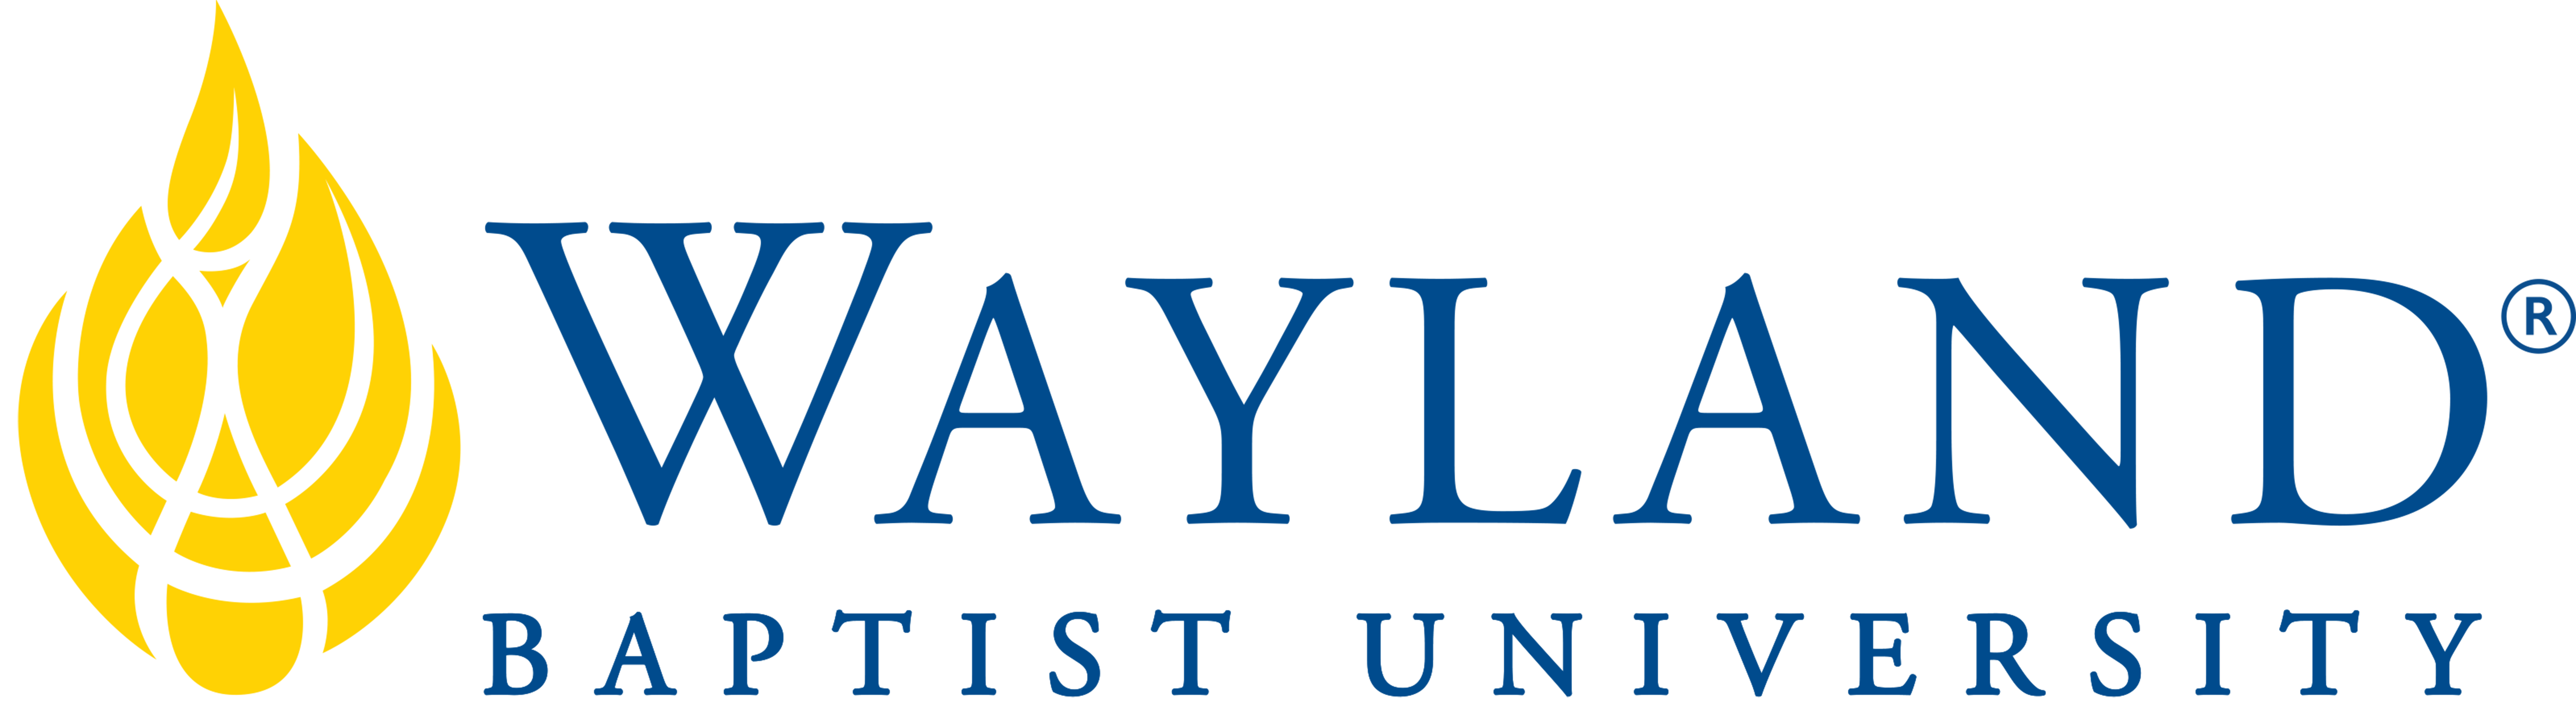 Wayland Baptist University Wichita Falls logo